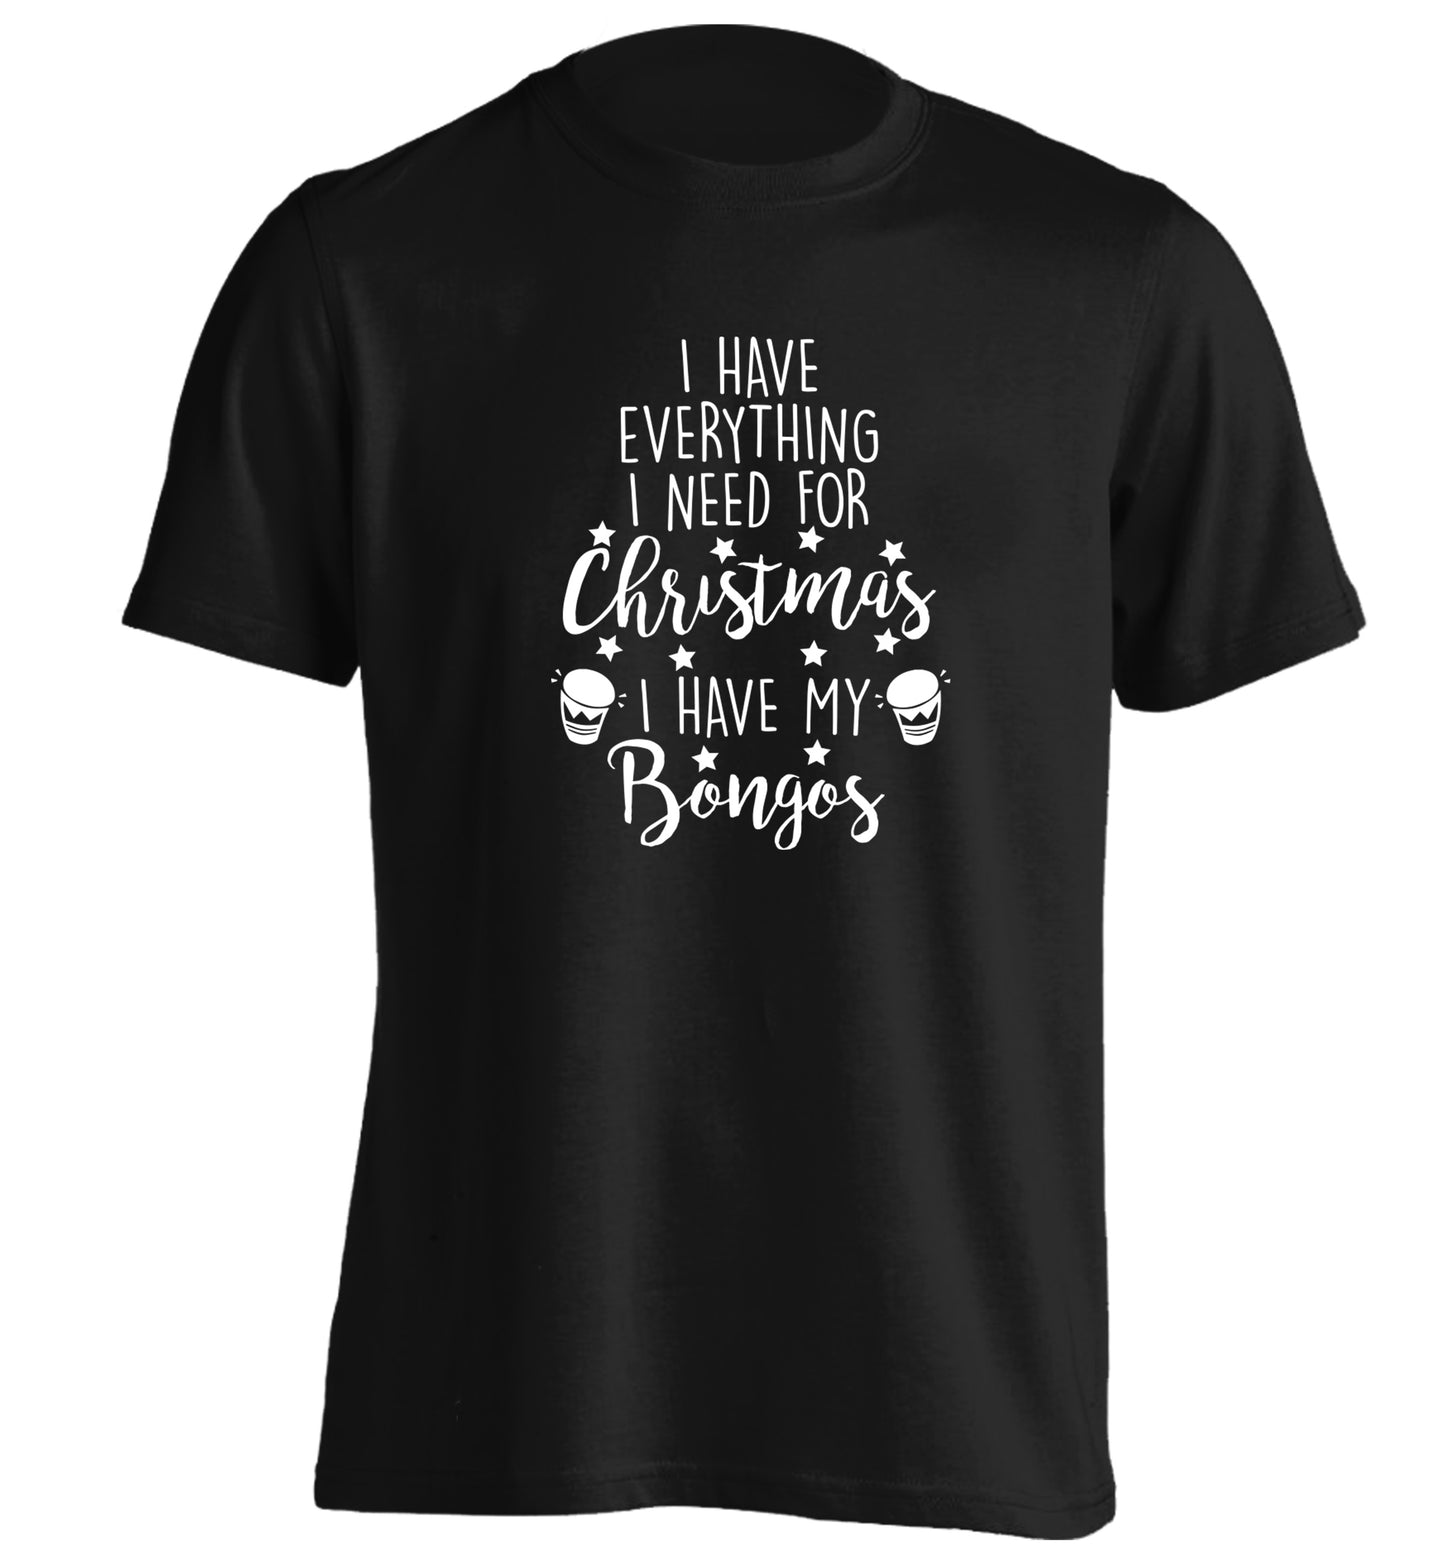 I have everything I need for Christmas I have my bongos! adults unisex black Tshirt 2XL